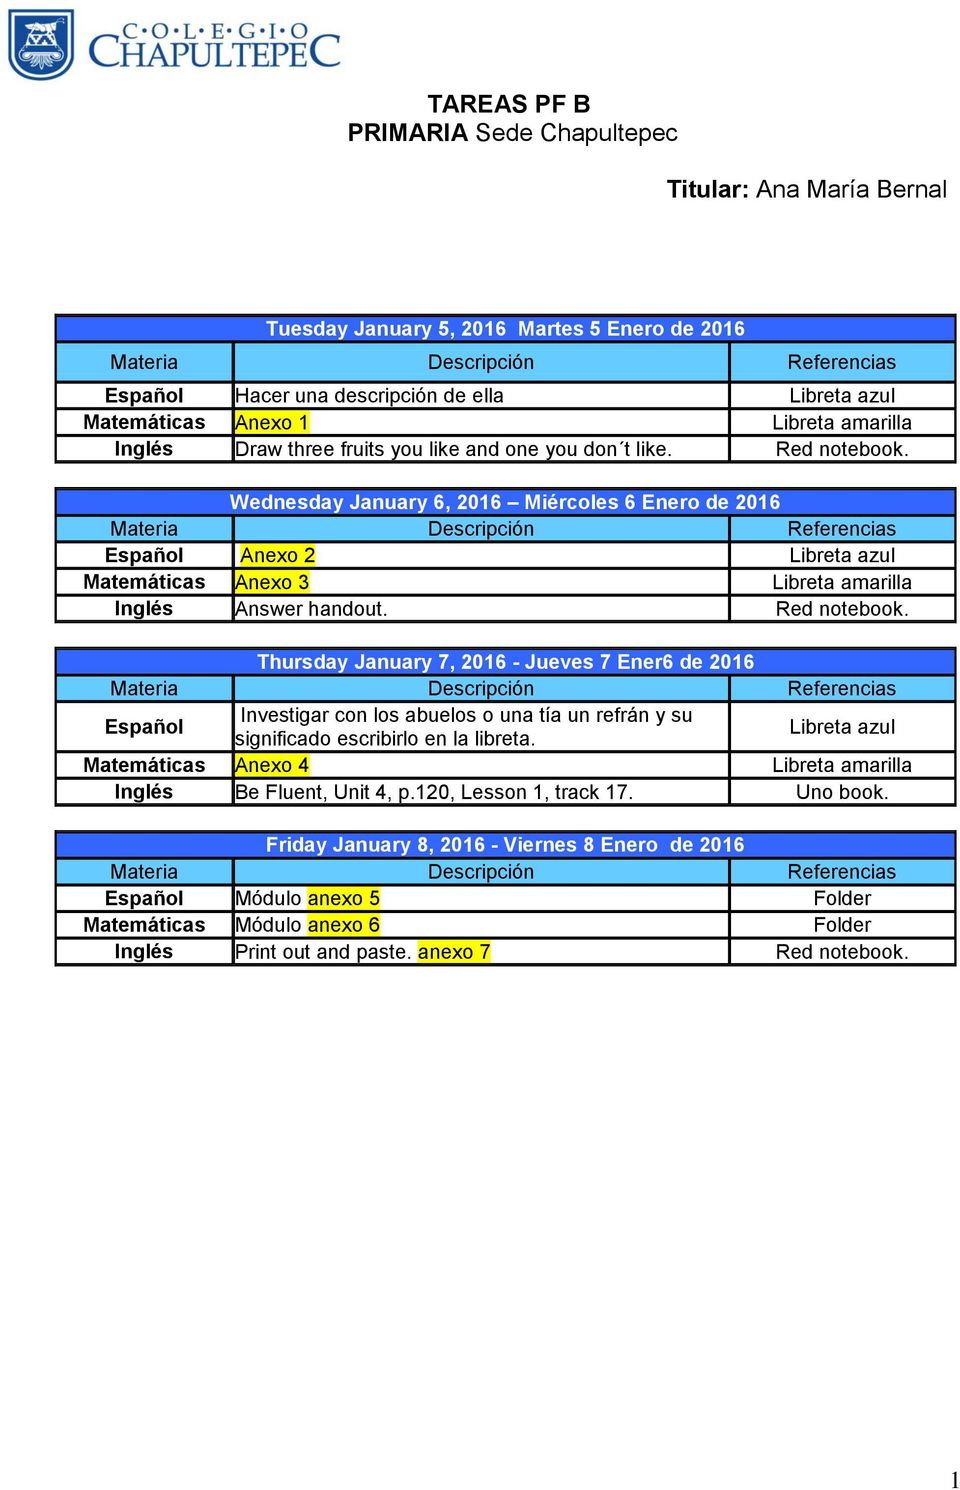 Wednesday January 6, 2016 Miércoles 6 Enero de 2016 Materia Descripción Referencias Español Anexo 2 Libreta azul Matemáticas Anexo 3 Libreta amarilla Inglés Answer handout. Red notebook.